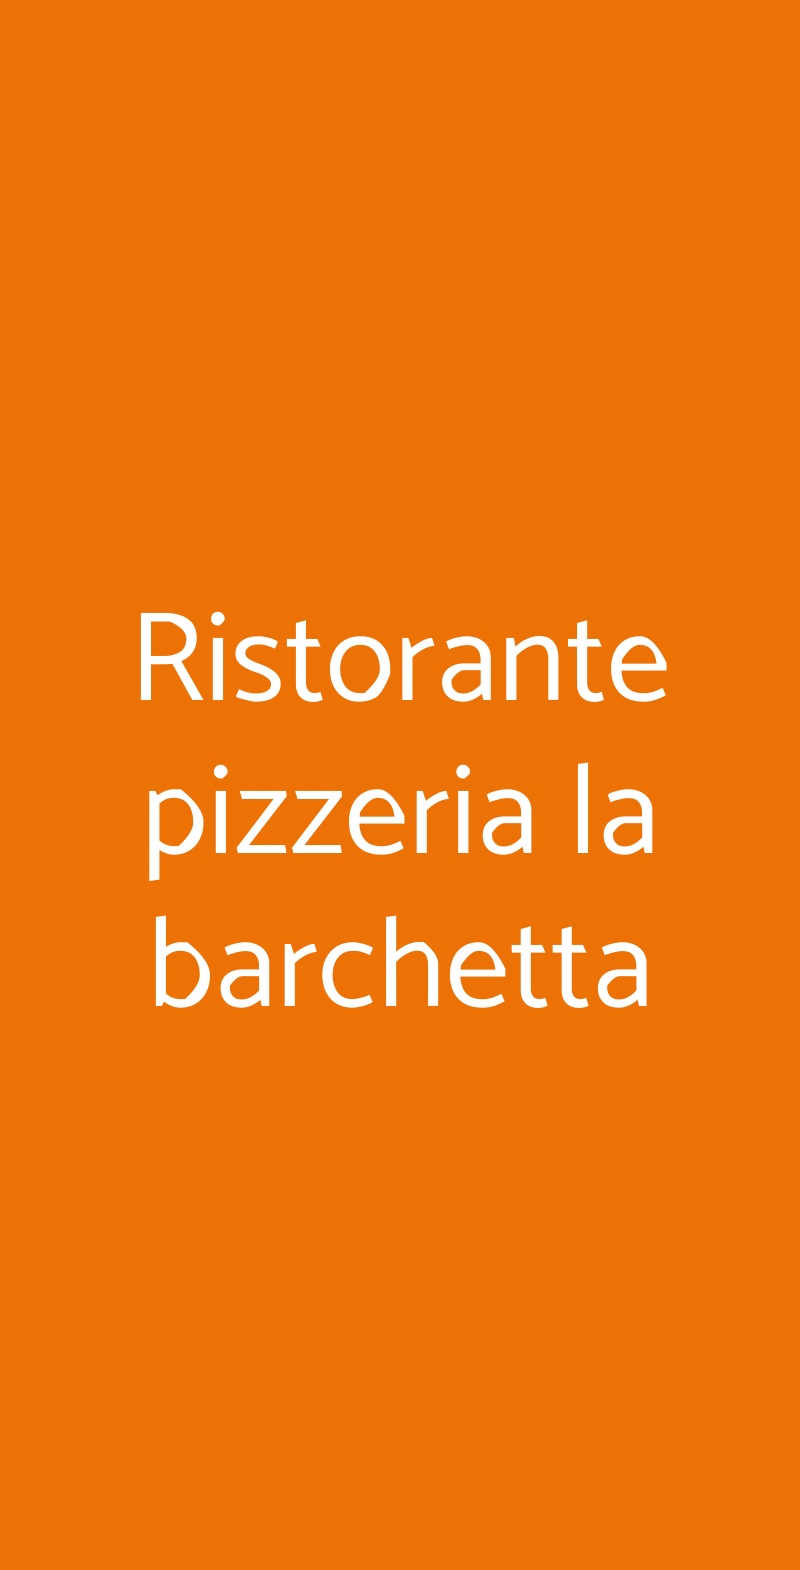 Ristorante pizzeria la barchetta Milano menù 1 pagina